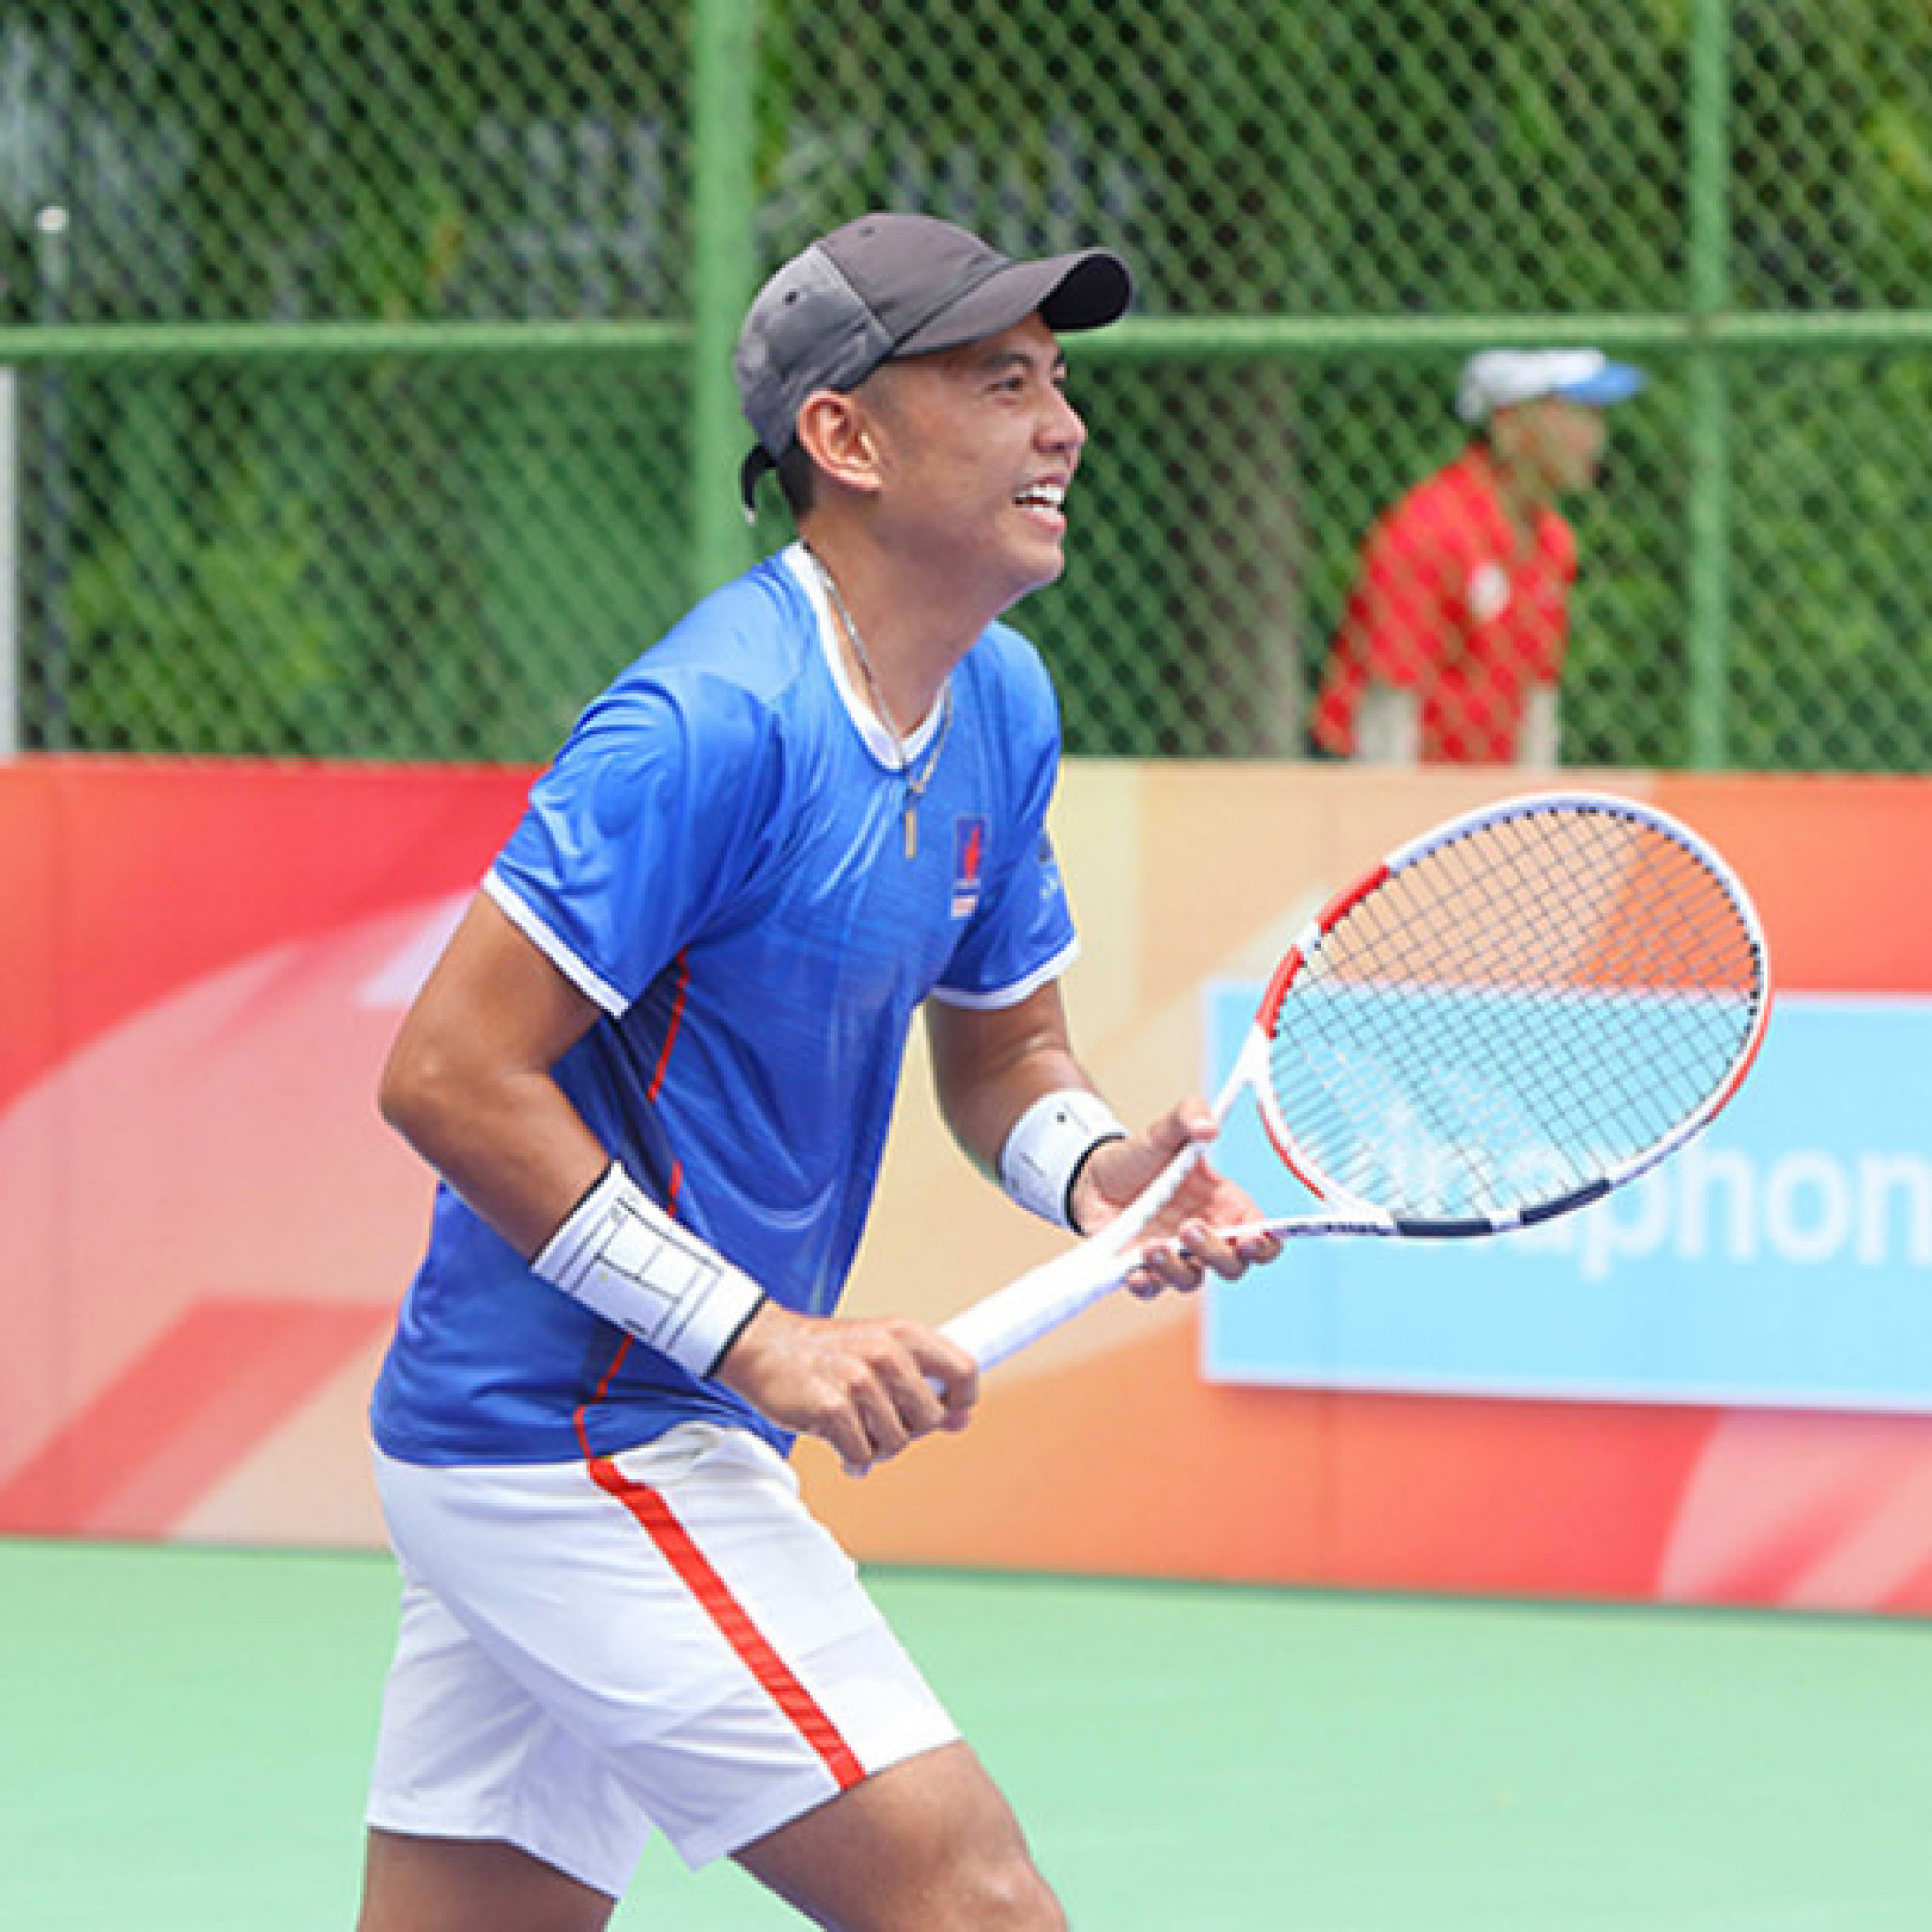 Hoàng Nam thắng tay vợt Nhật Bản, vào bán kết giải quần vợt nhà nghề Tây Ninh